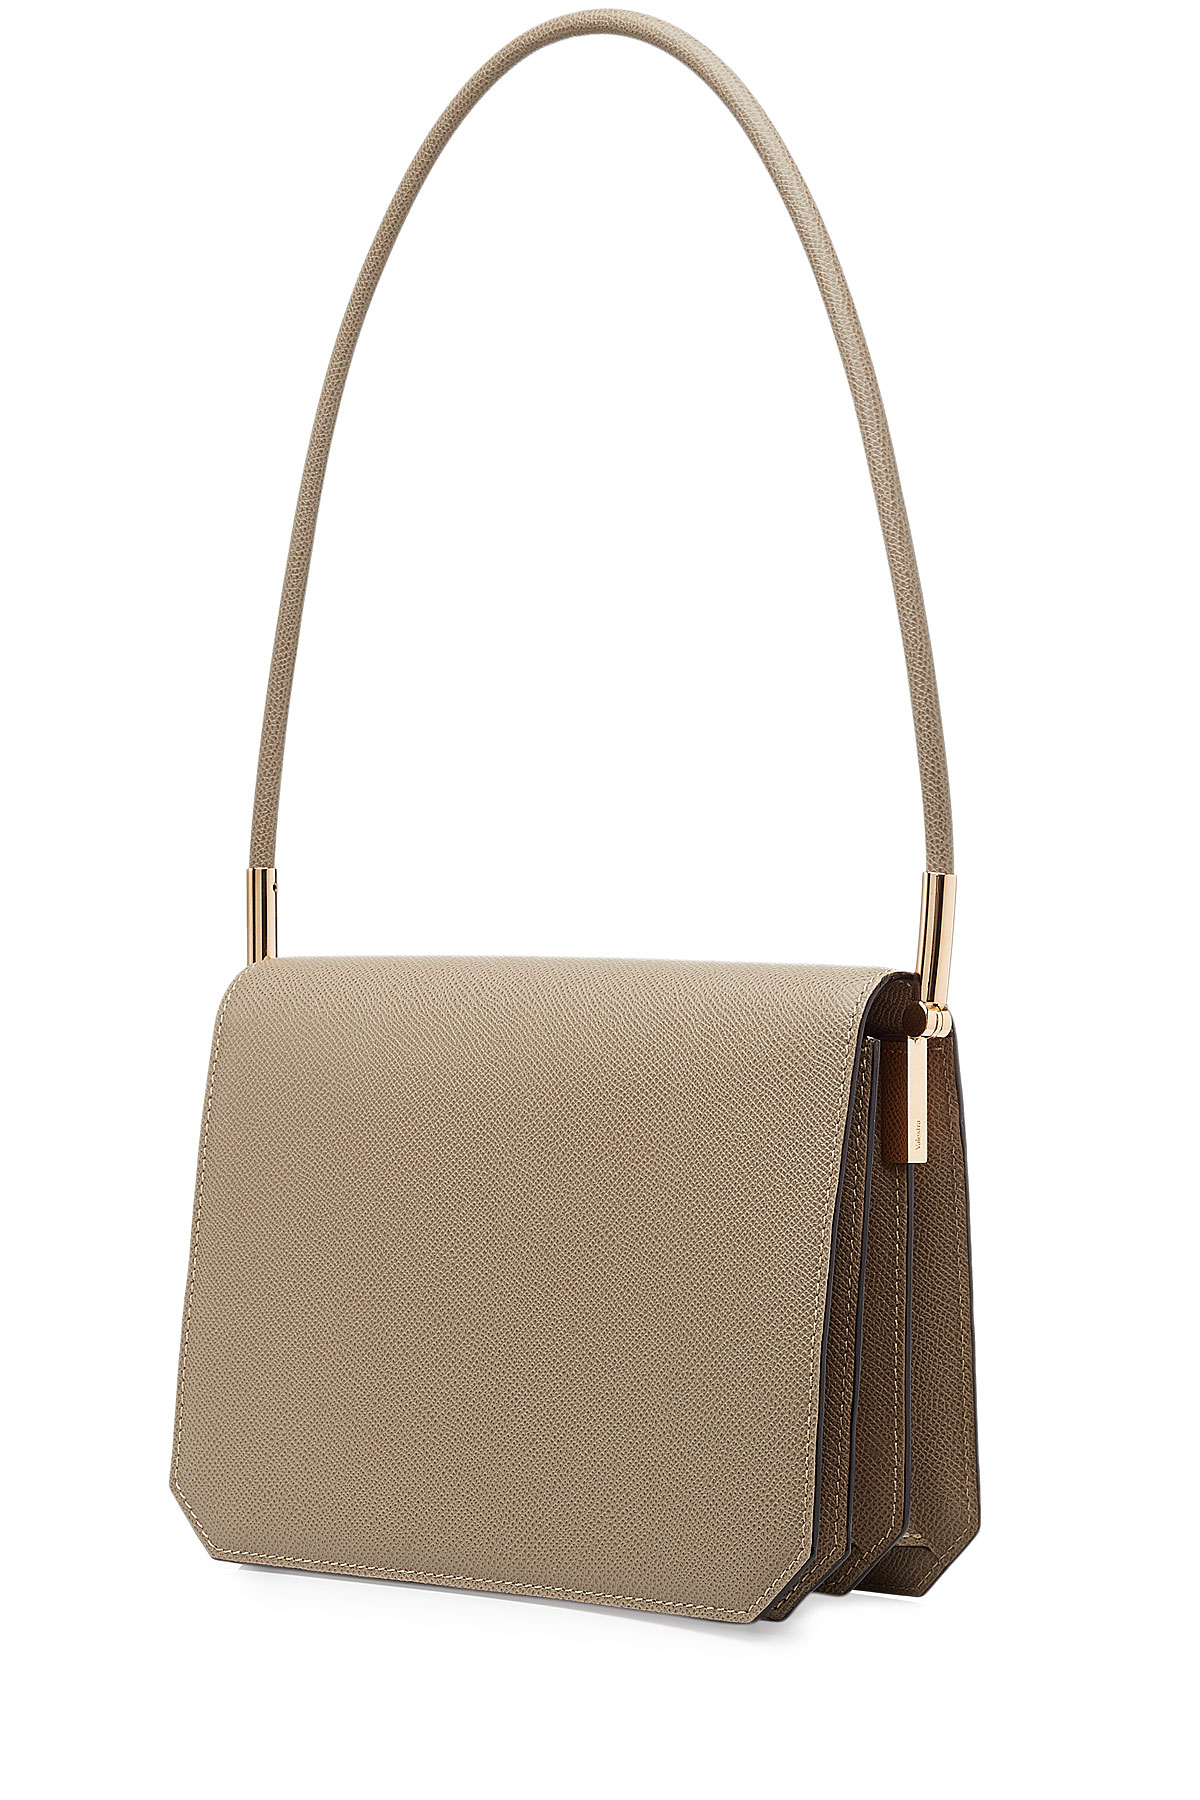 Valextra Fontana Leather Shoulder Bag - Beige in Natural | Lyst